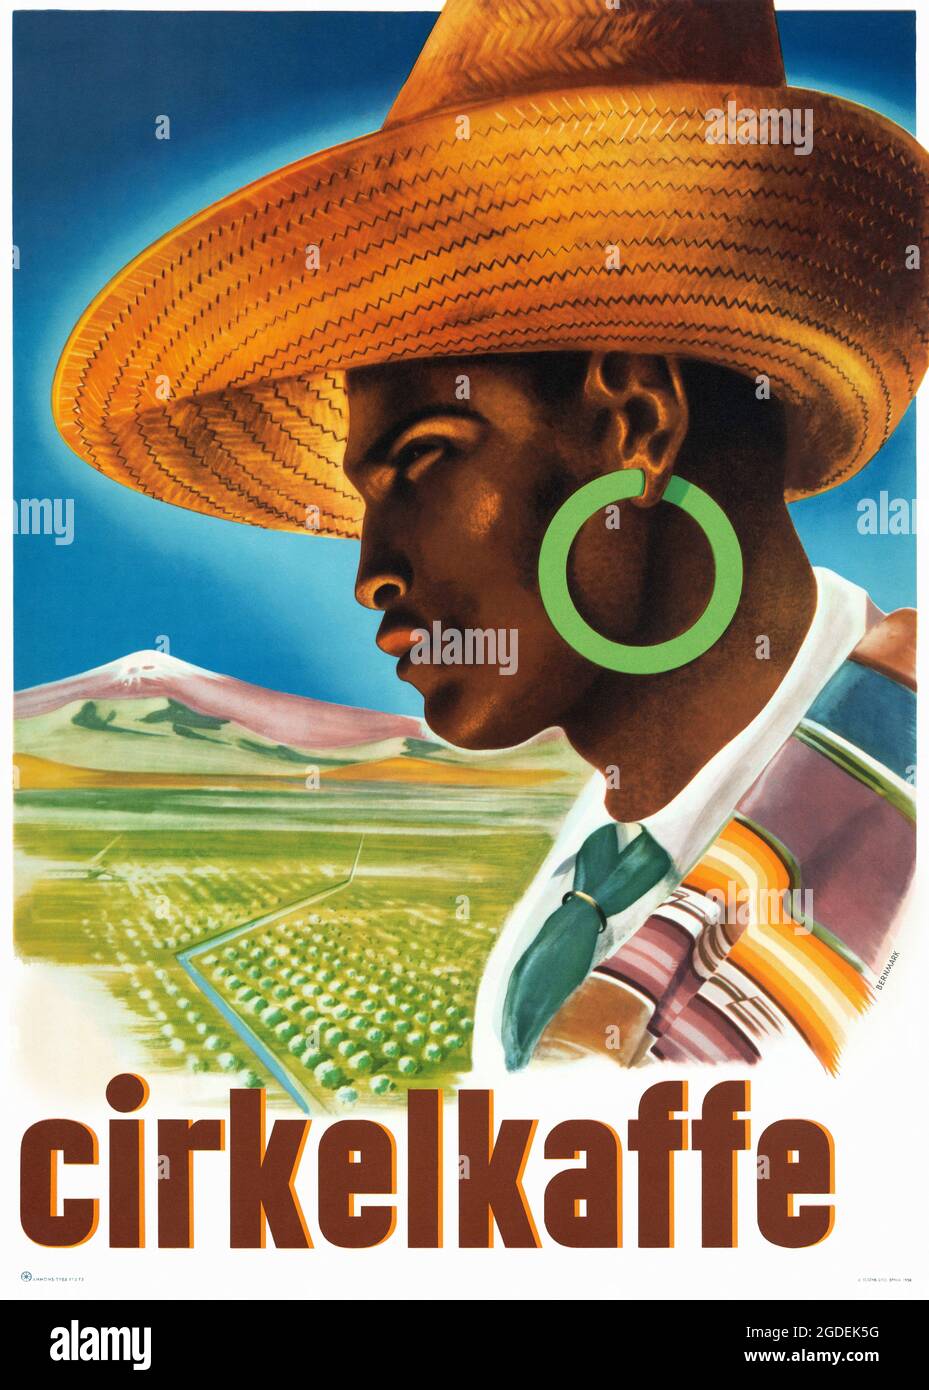 Cirkelkaffe by Harry Bernmark (1900-1961). Restored vintage poster published in 1958 in Sweden. Stock Photo